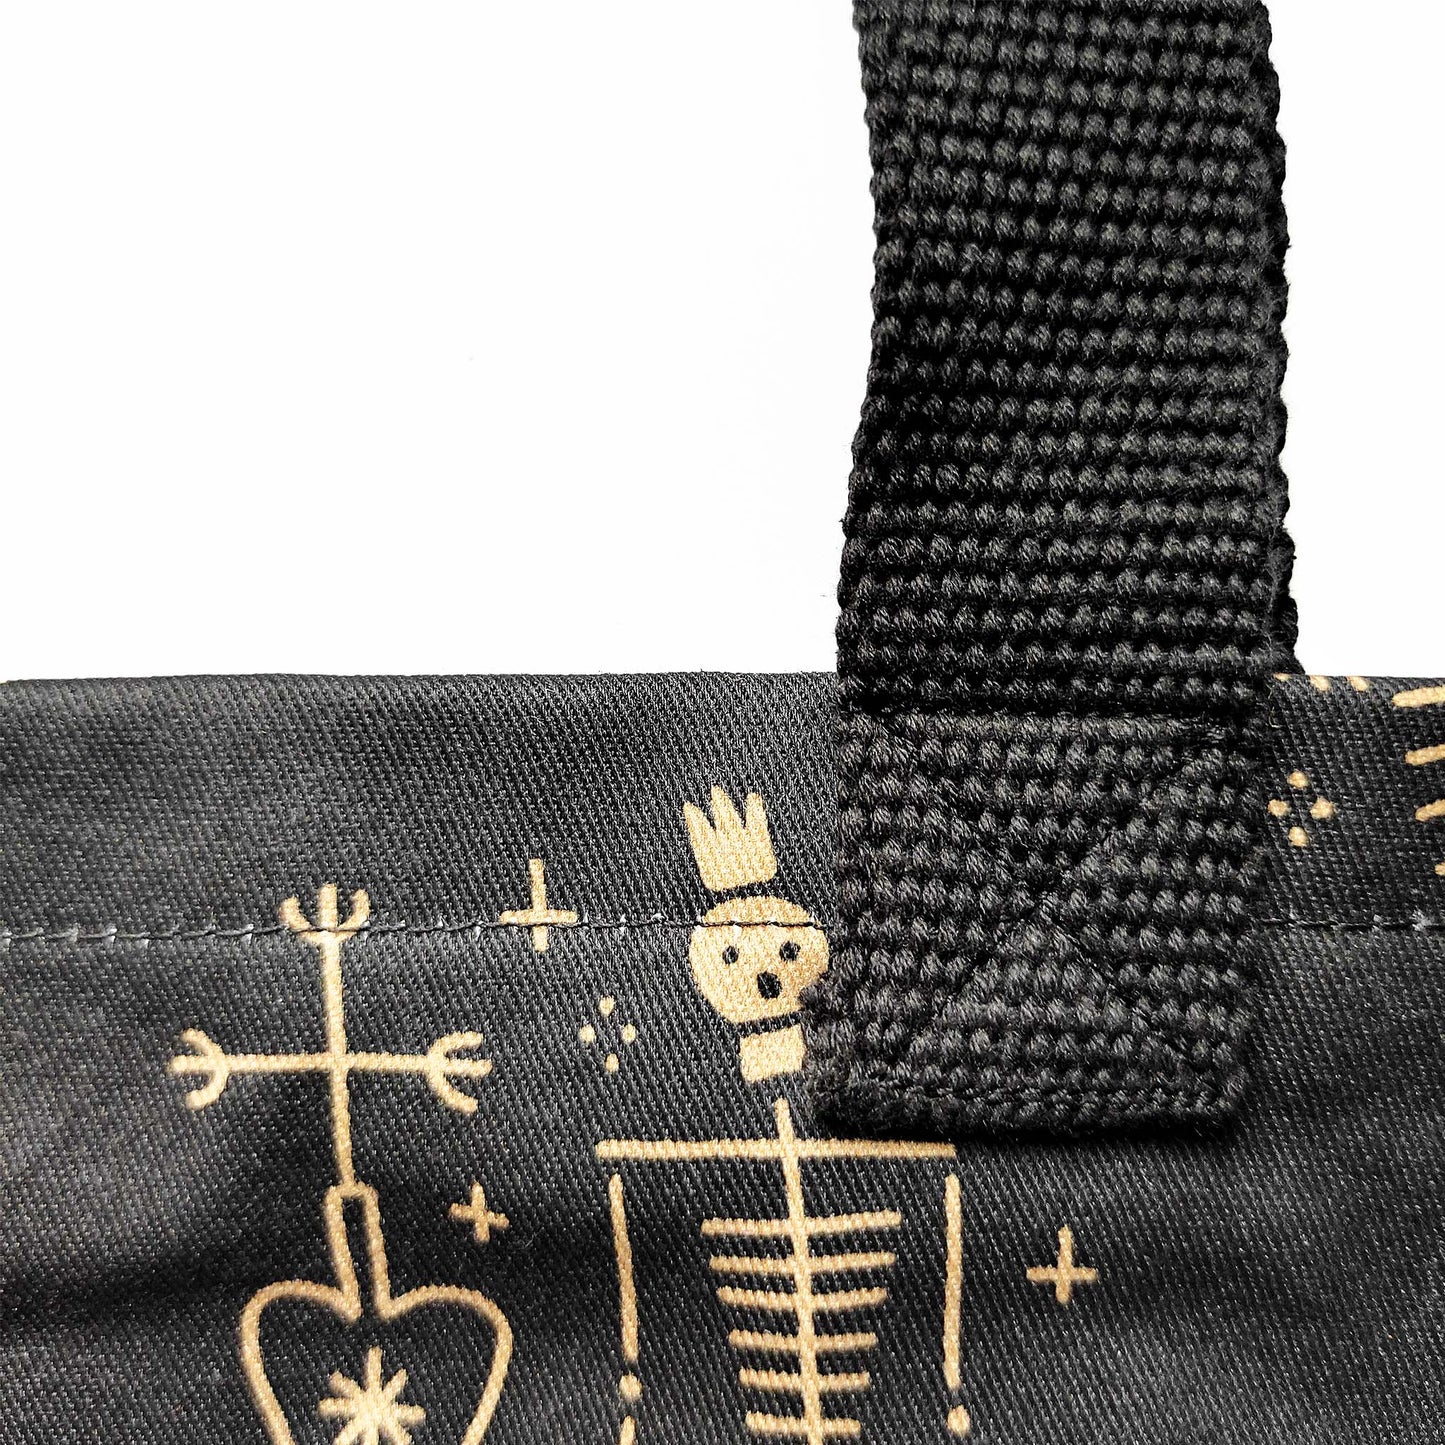 Elegante,geräumige und robuste Shopper-Tasche in Schwarz und Gold mit einem einzigartigen Stoffmuster: eine Skelett-Meerjungfrau